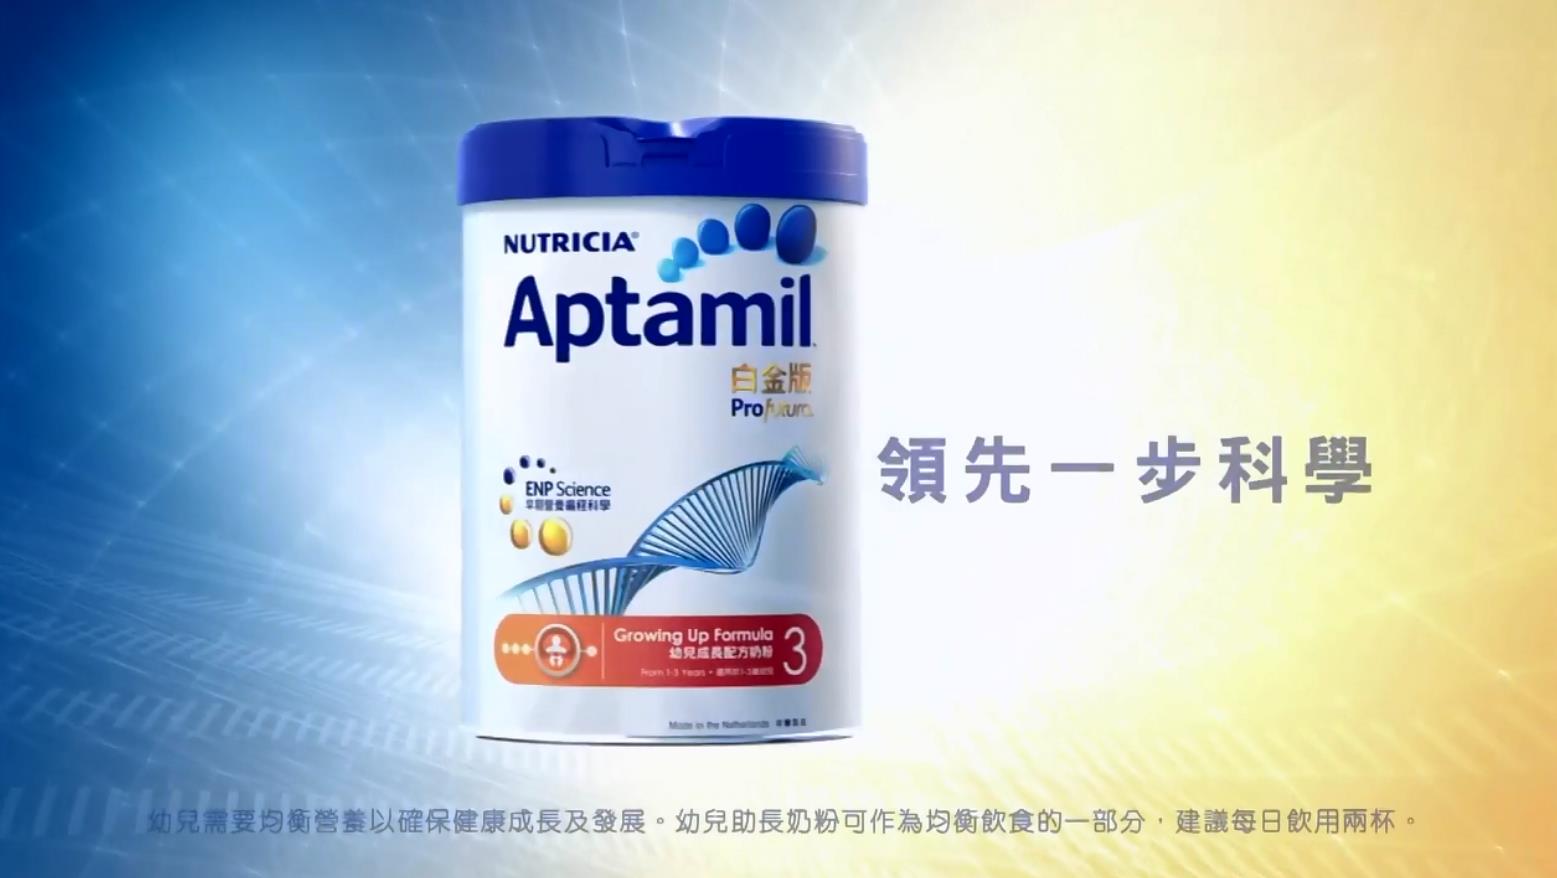 Nutricia Aptamil 白金版奶粉 广告